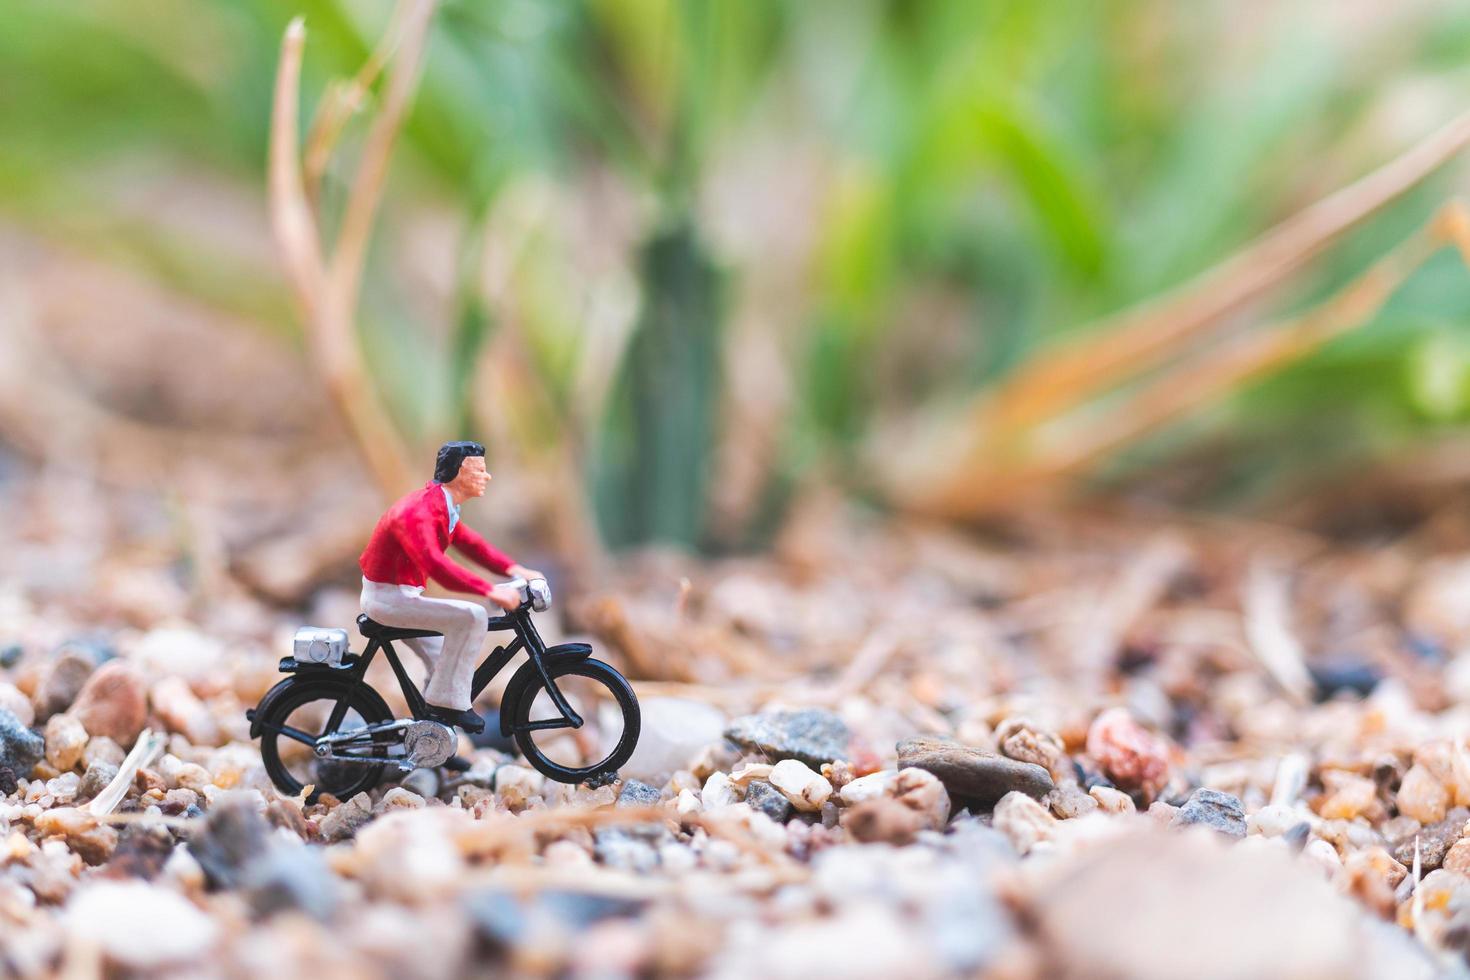 viajante em miniatura andando de bicicleta, explorando o conceito do mundo foto